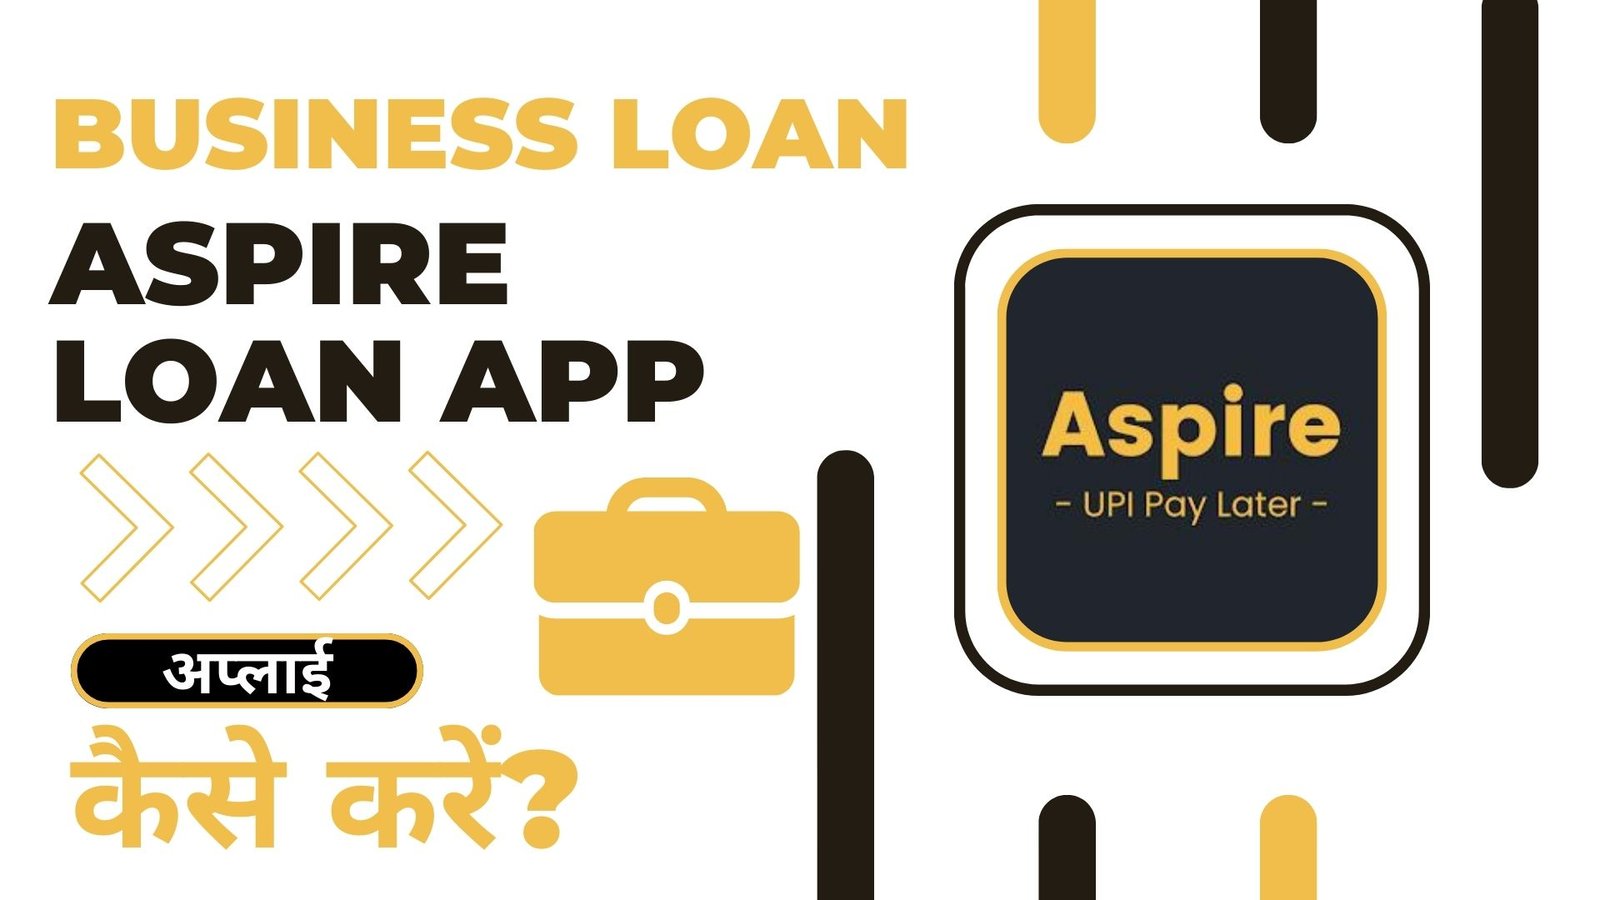 Aspire Loan App से लोन कैसे लें?